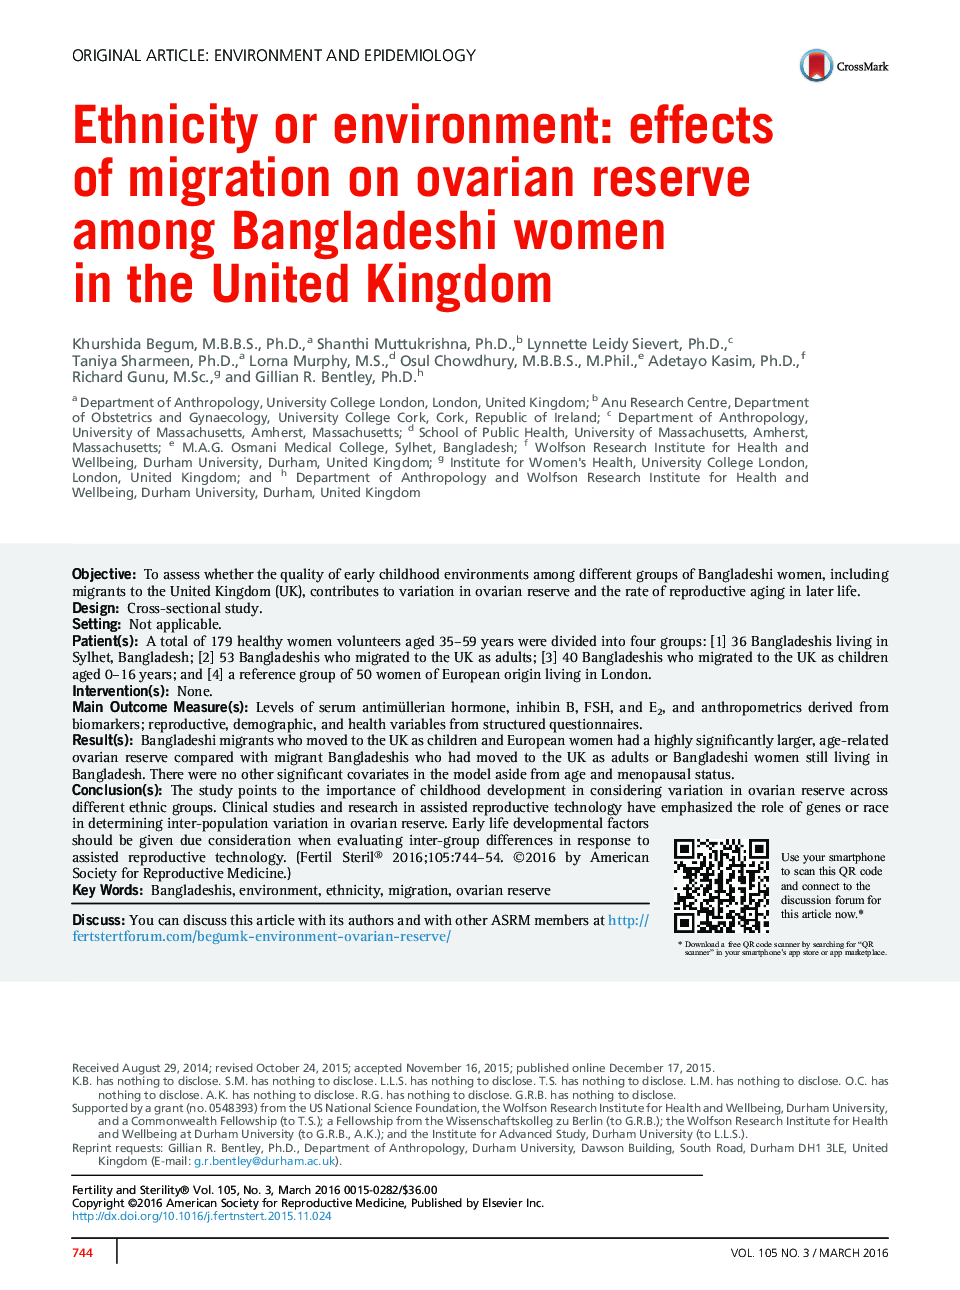 قومیت یا محیط زیست: اثرات مهاجرت به ذخیره تخمدان در میان زنان بنگلادشی در ایالت متحده بریتانیا 